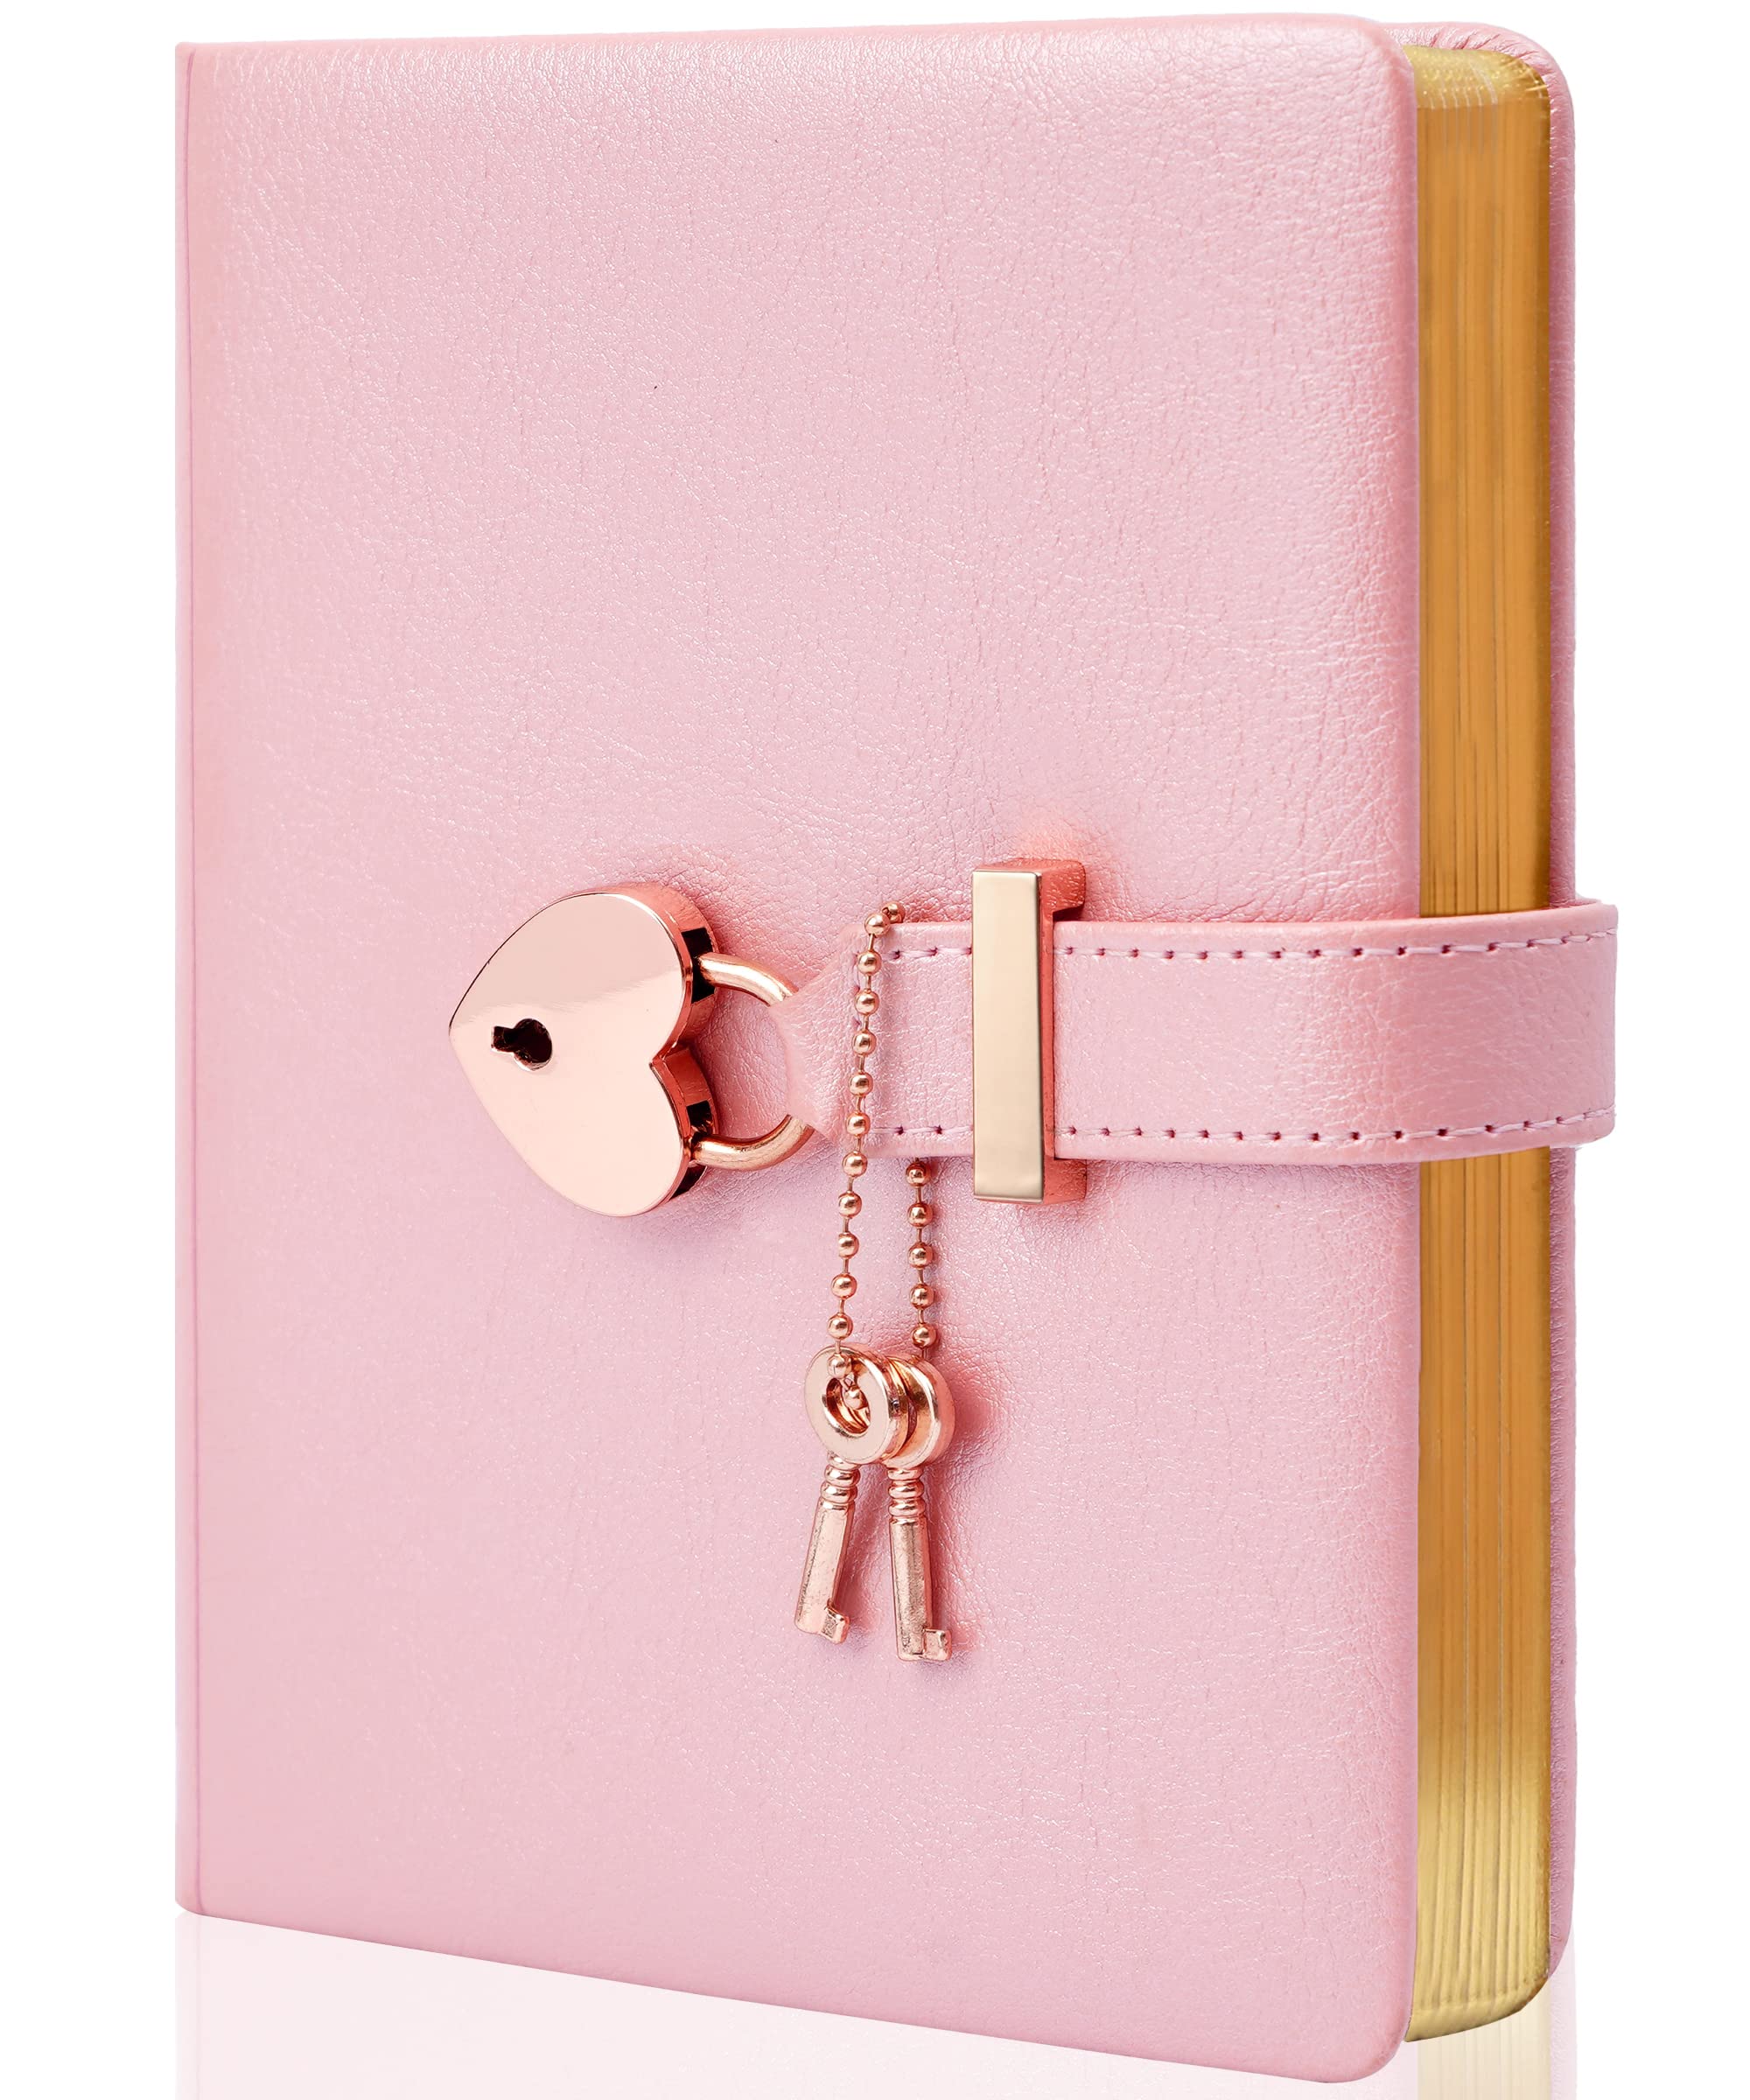 A locked diary with a key.